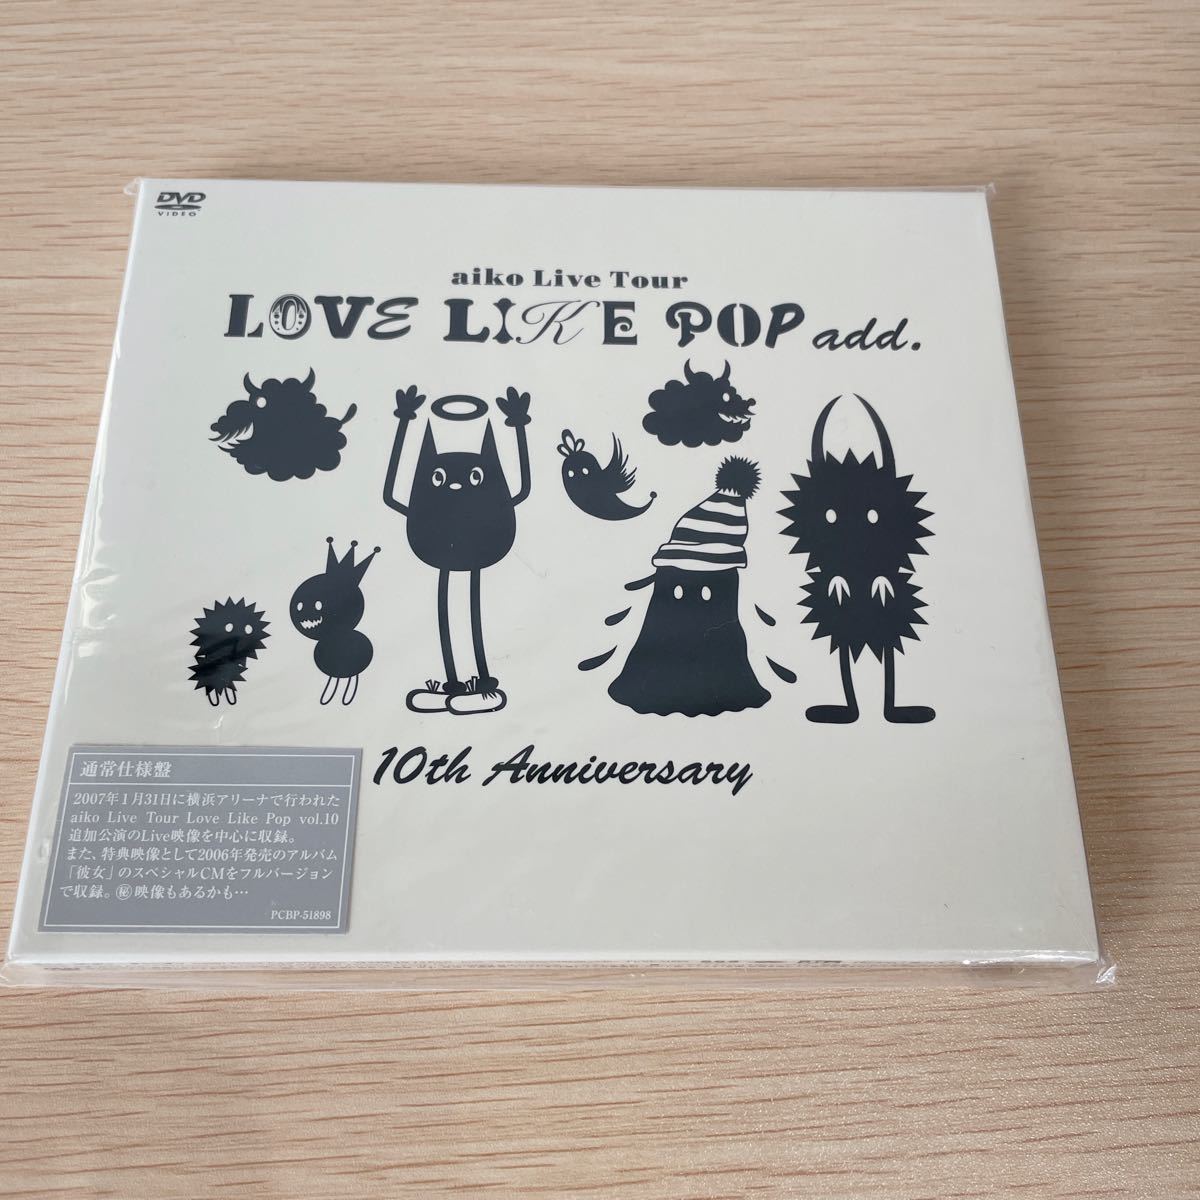 パーティを彩るご馳走や aiko LOVE LIKE POP add. 10th Anniversary